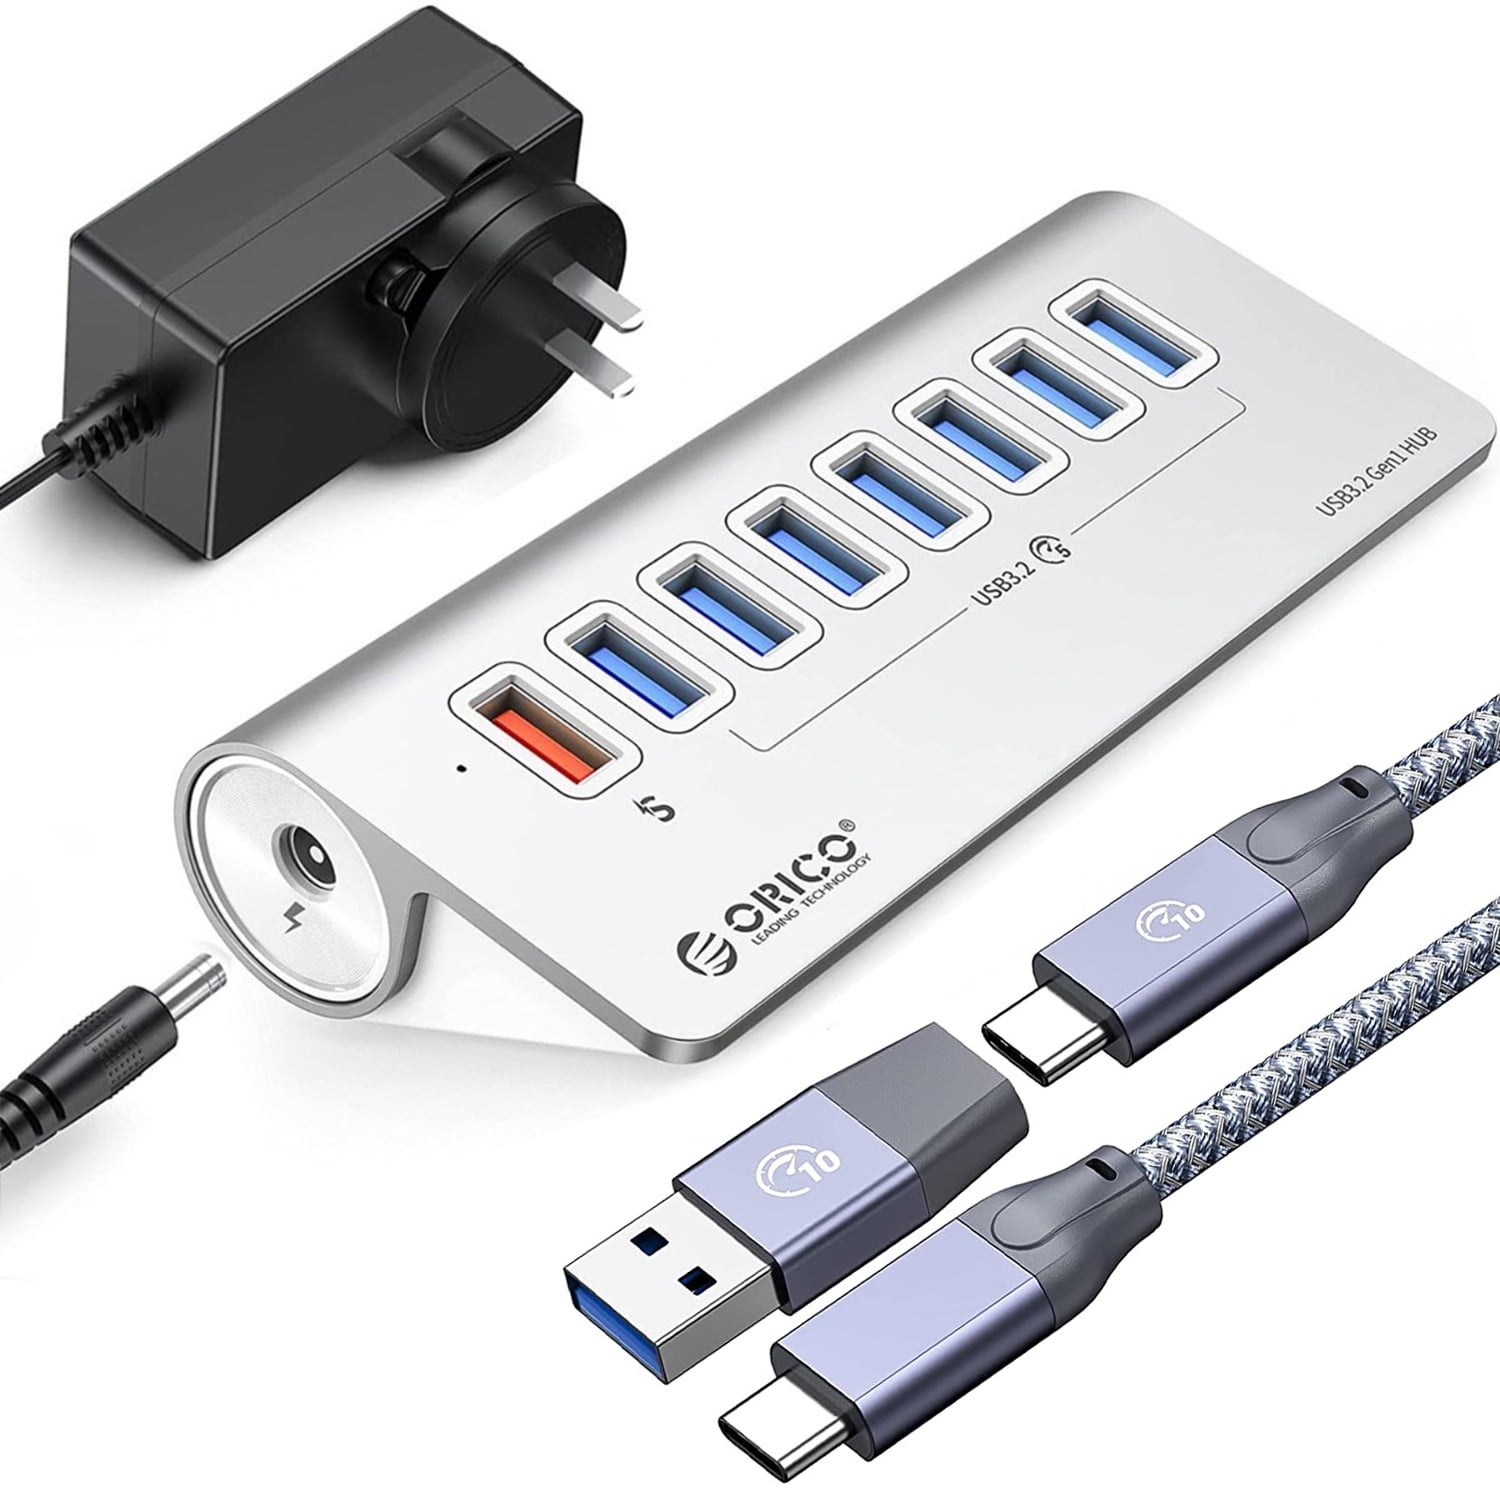 Achoro 7 Ports Powered USB HUB – 2nd Generation 10GB Super Speed External  USB Port – USB 3.2 Aluminium USB Hub for Computer, Mac, PCs, Smartphone 